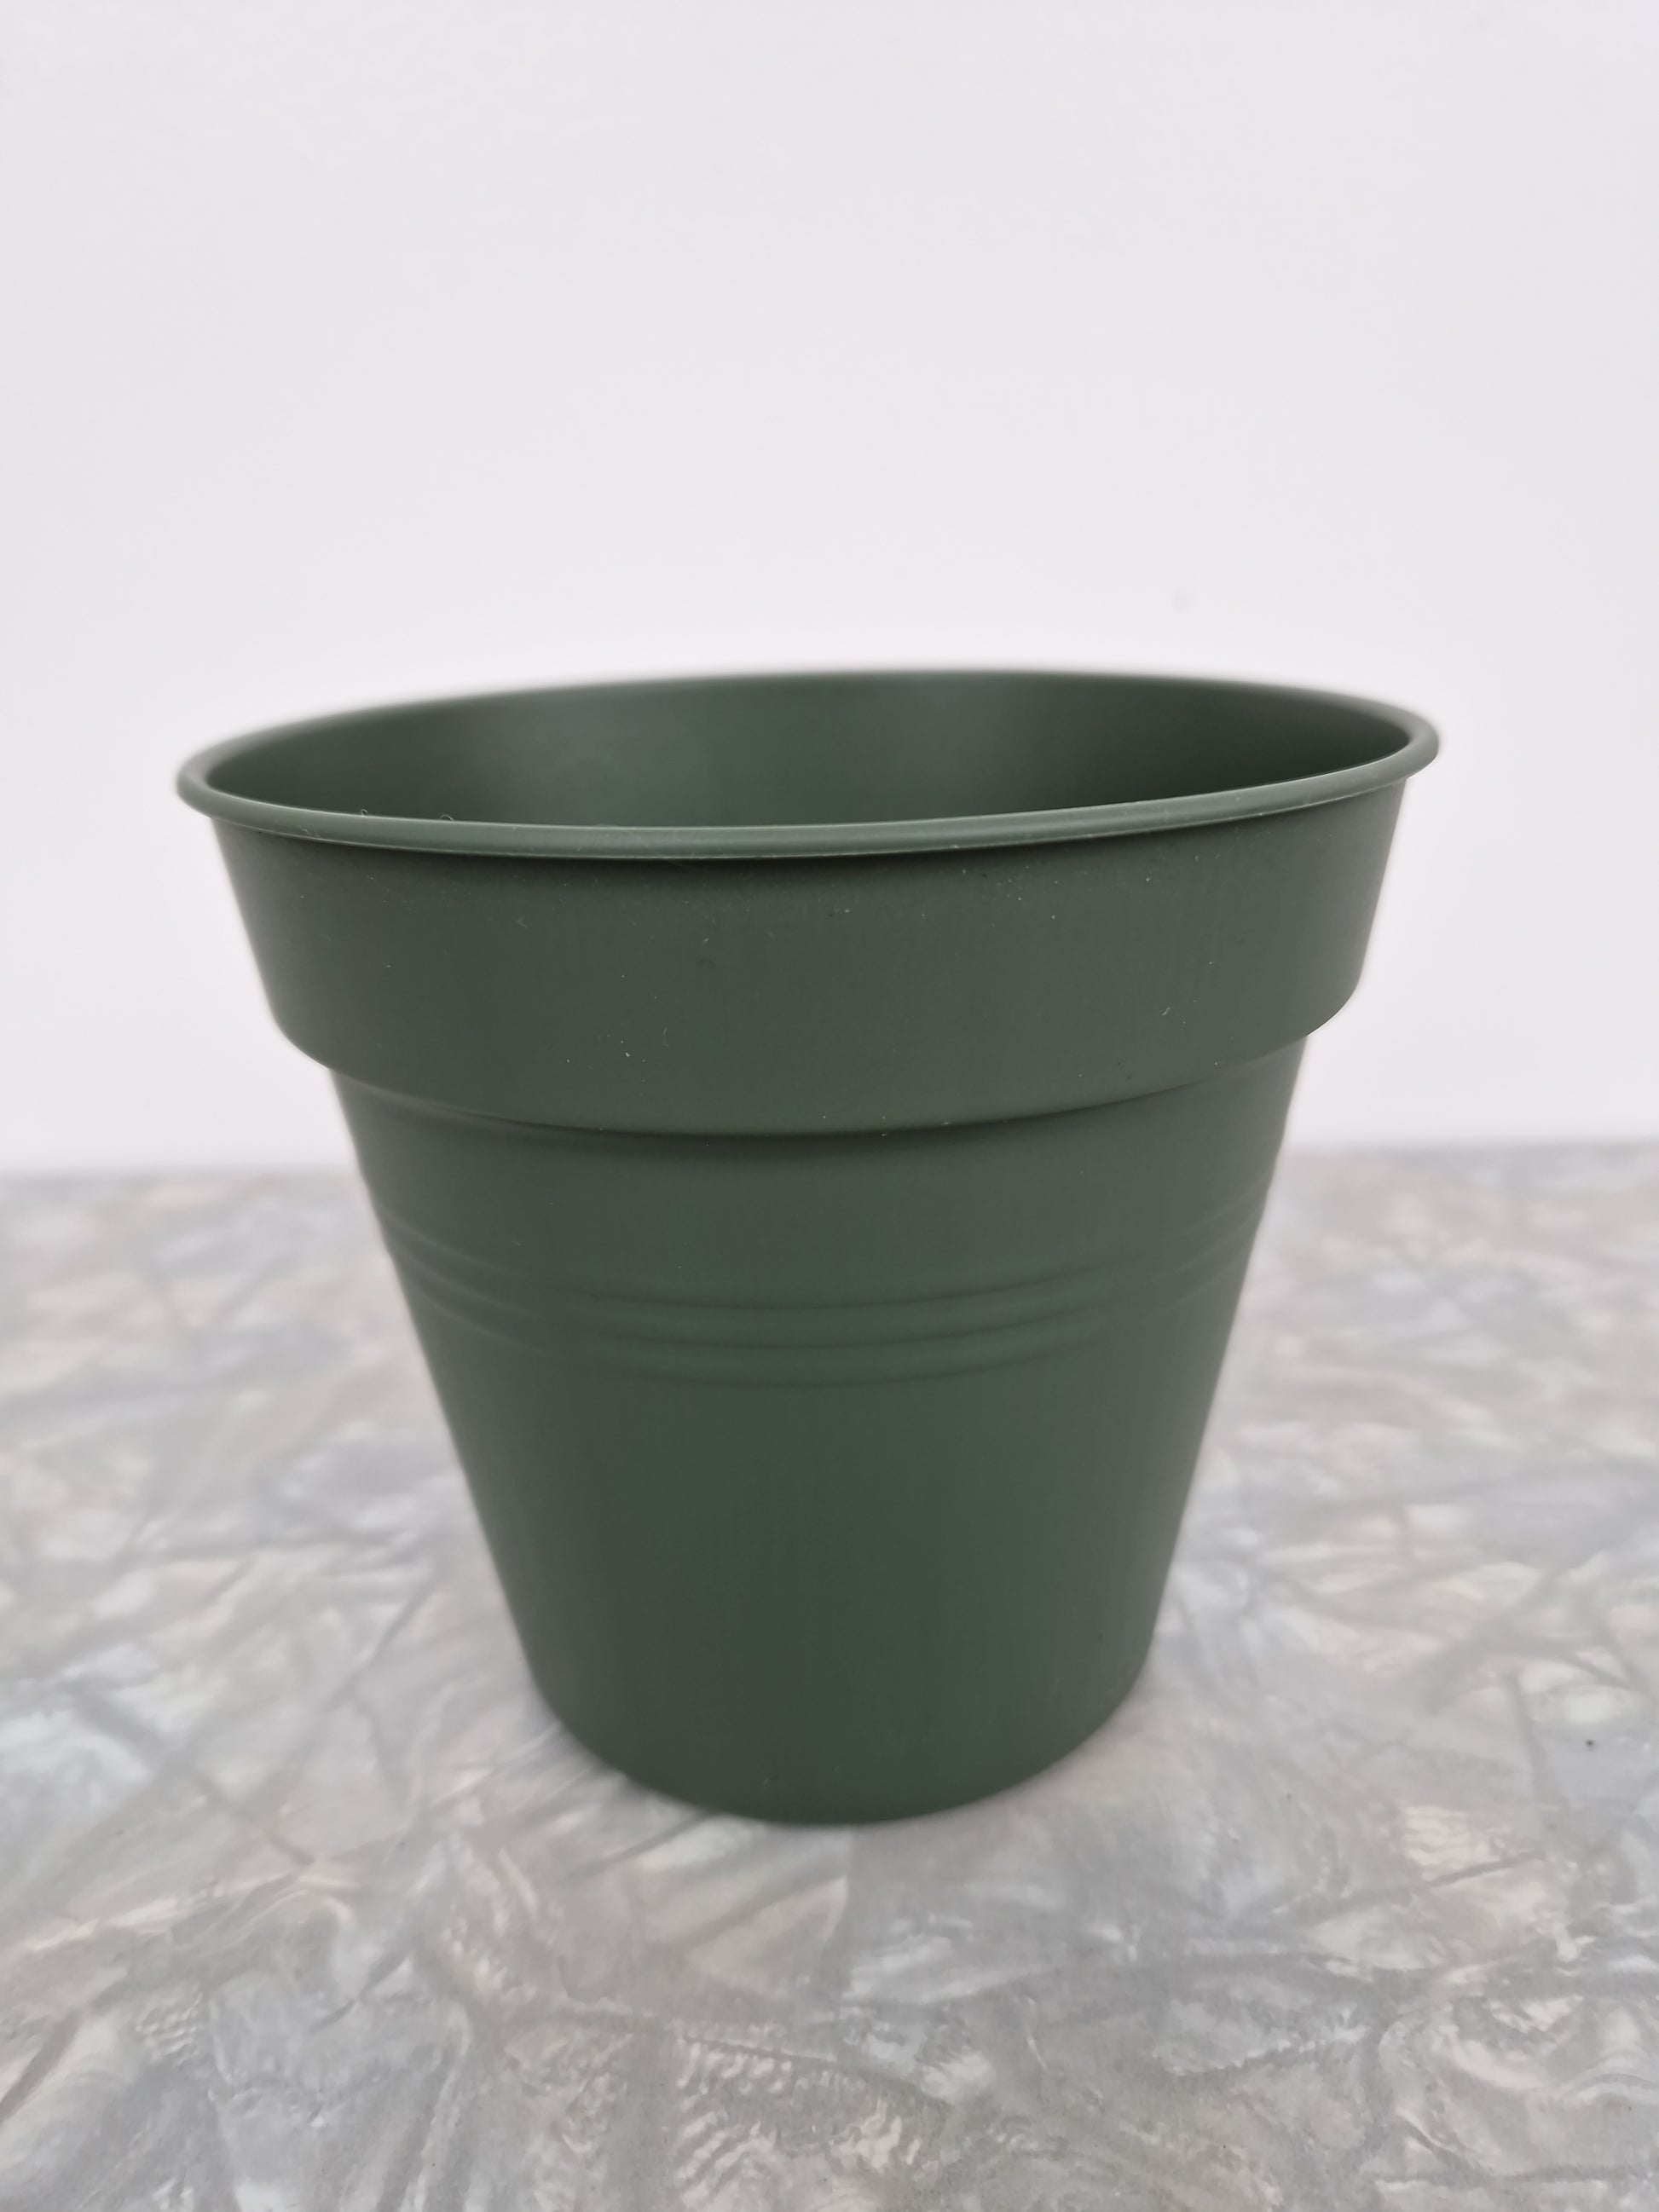 Bilde av Plastpotte Elho grønn 13 cm-Spanne Plantesalg